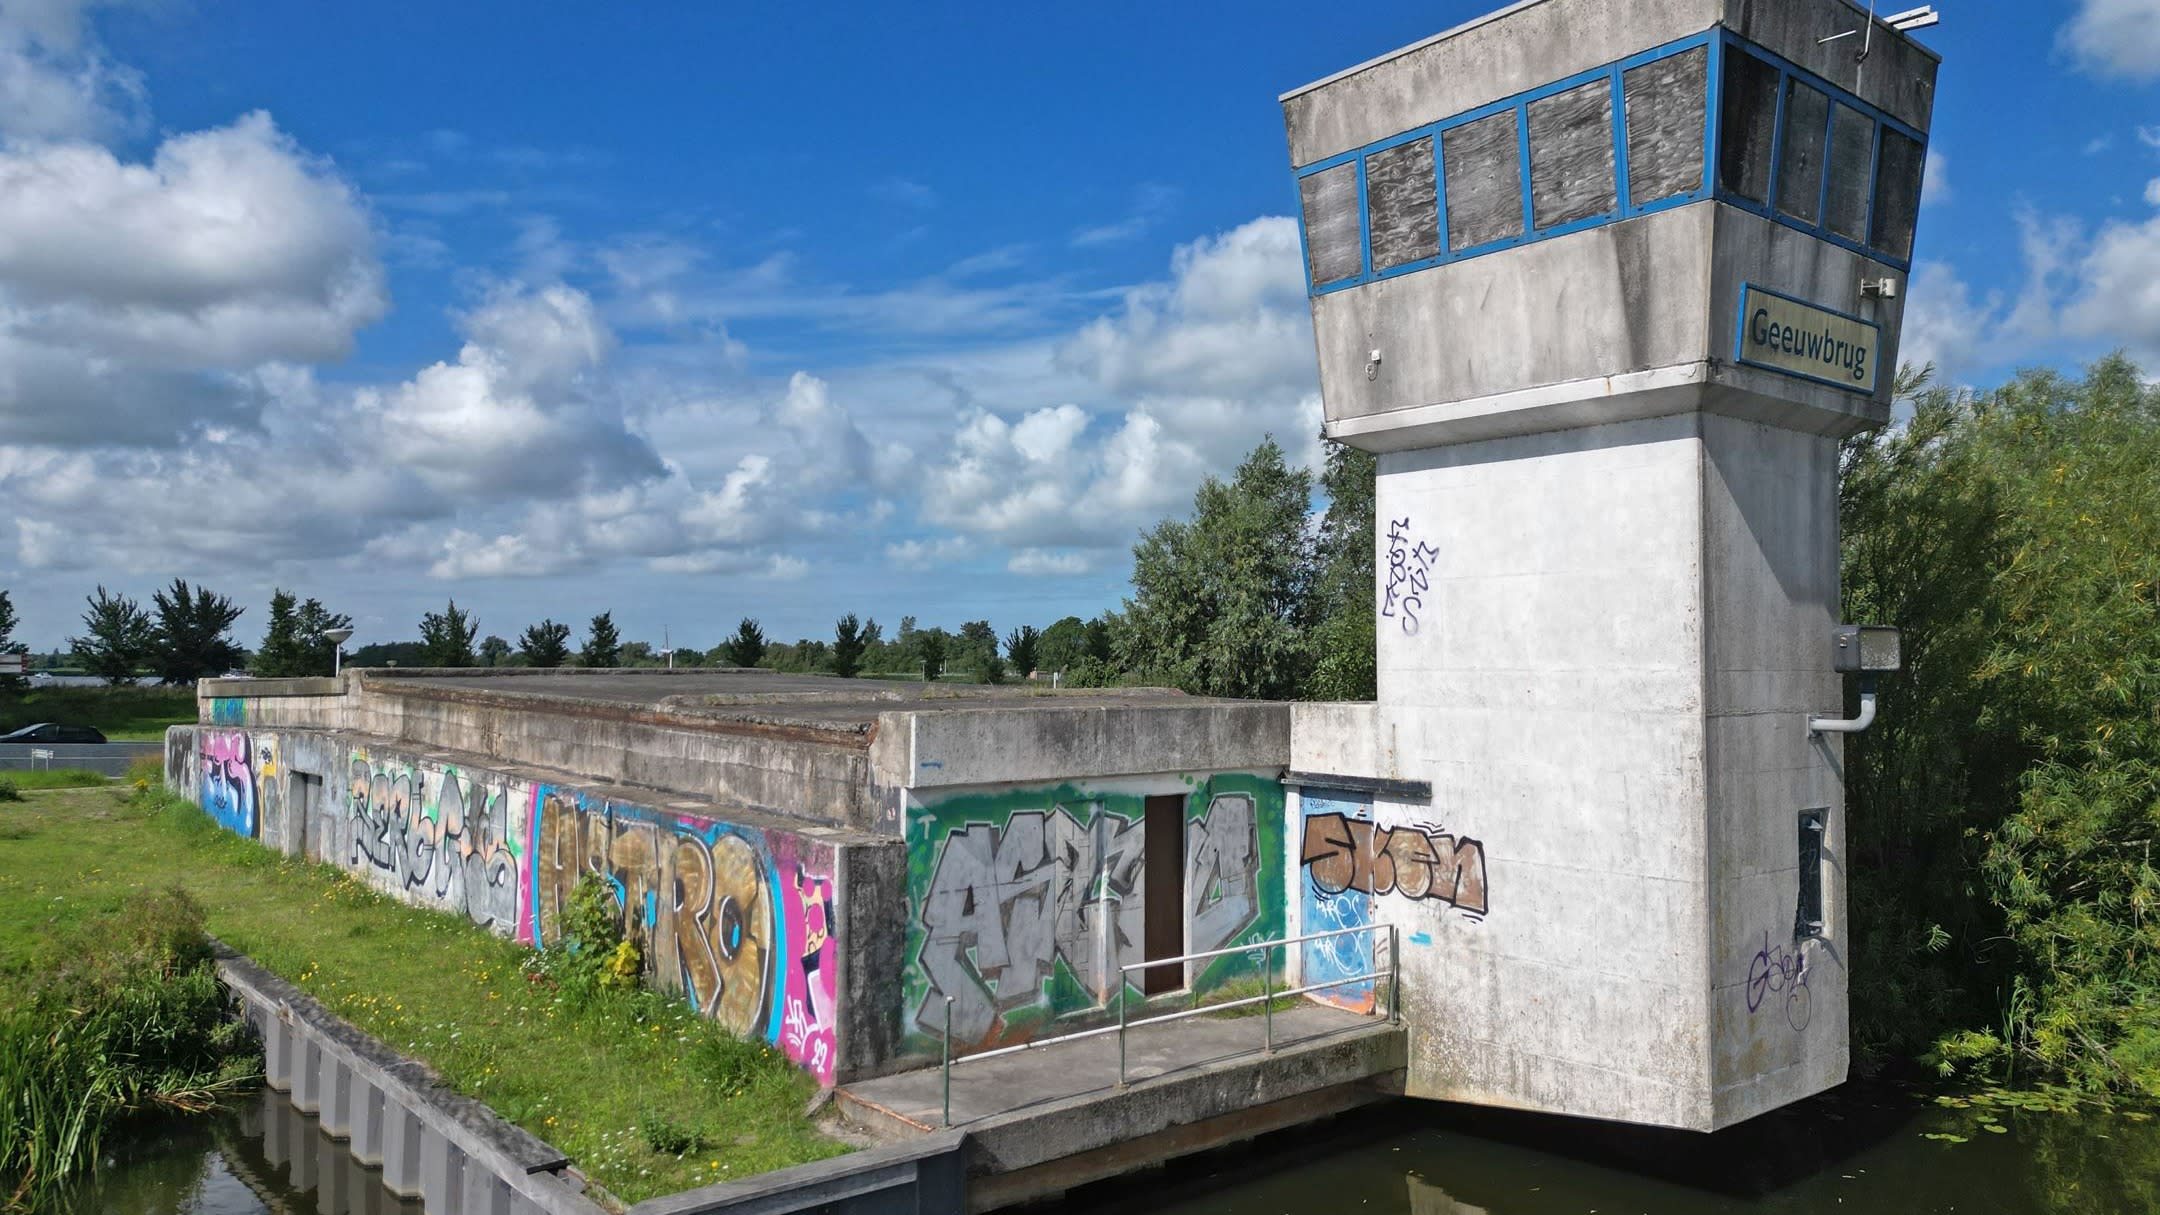 Makelaar zet met graffiti beklad pand te koop als 'exclusieve watervilla'